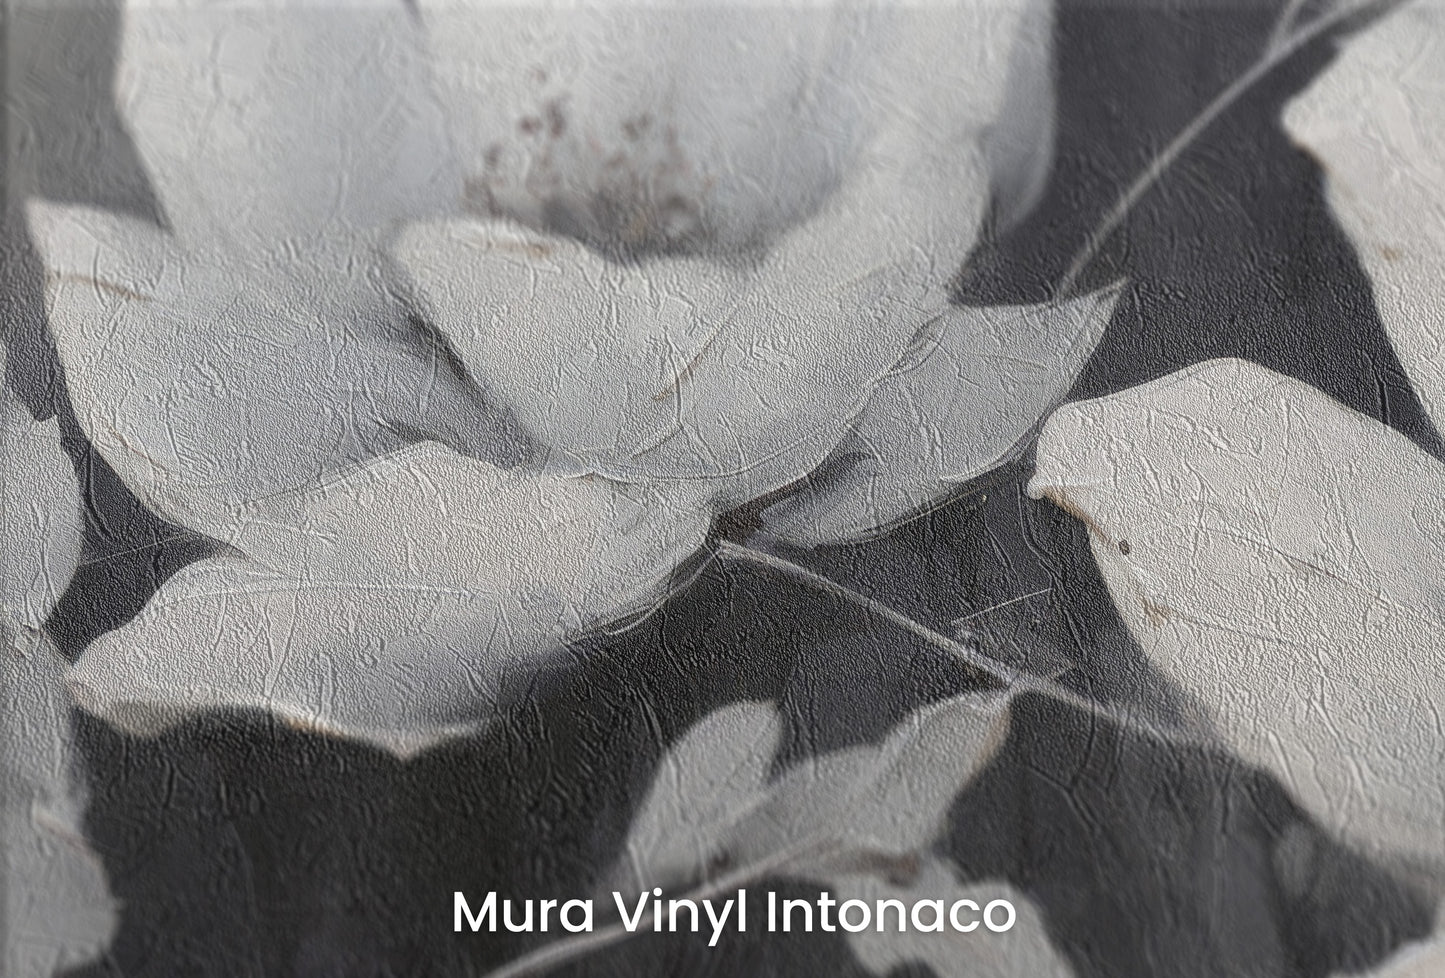 Zbliżenie na artystyczną fototapetę o nazwie MOONLIGHT SERENADE BLOSSOMS na podłożu Mura Vinyl Intonaco - struktura tartego tynku.